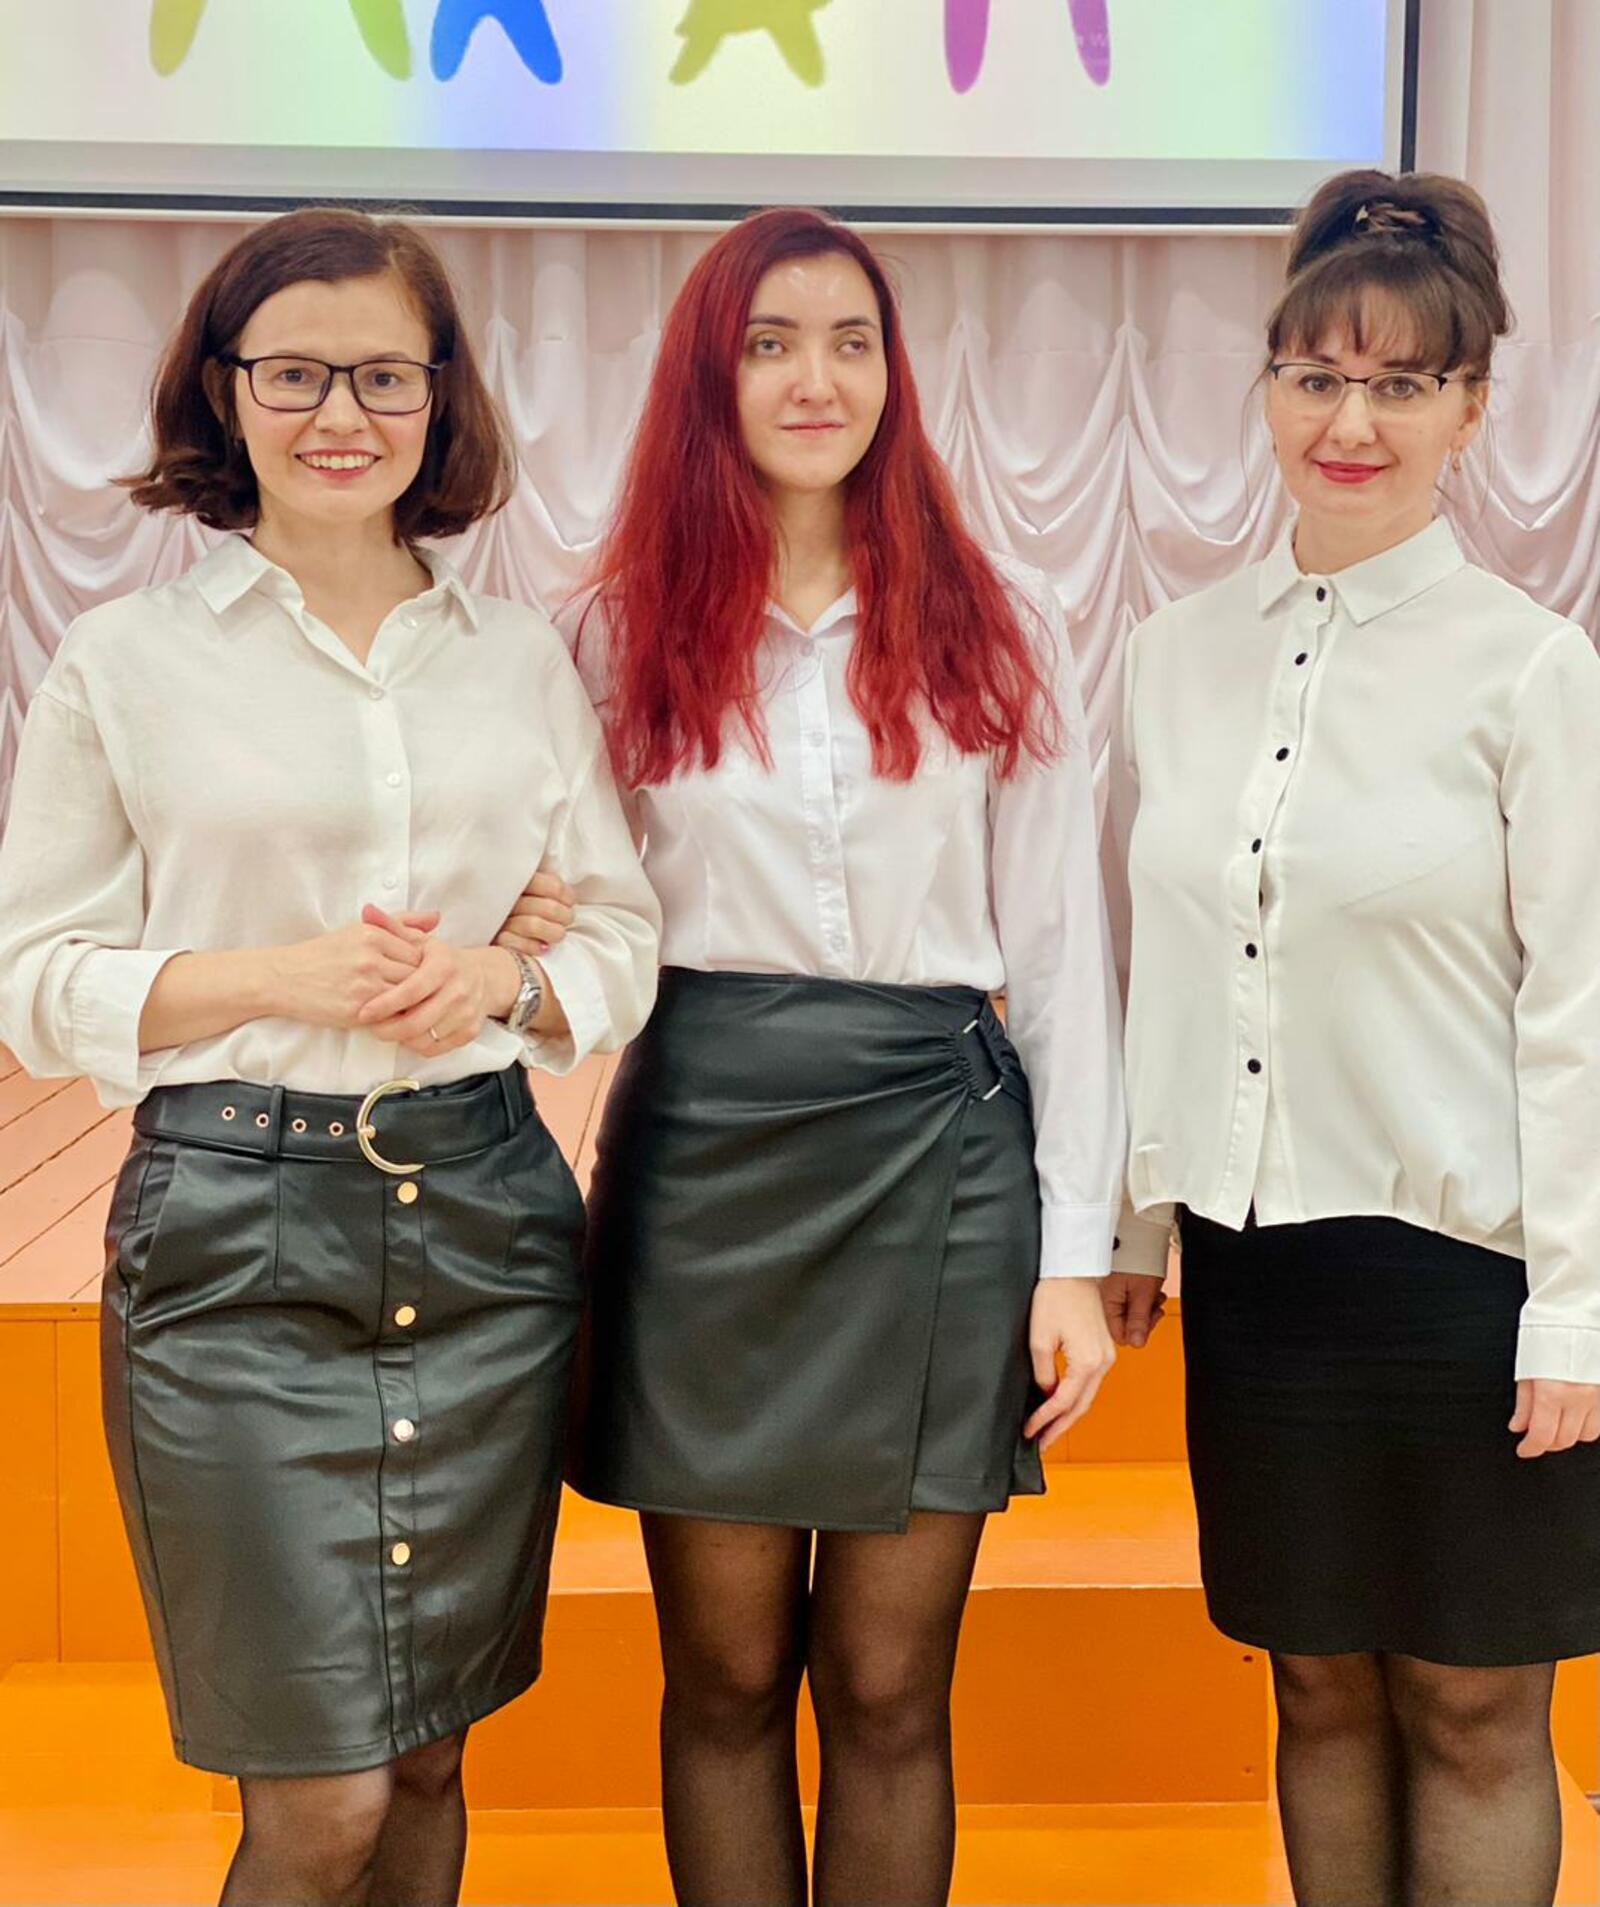 Стерлитамакские студентки победили во Всероссийском конкурсе!